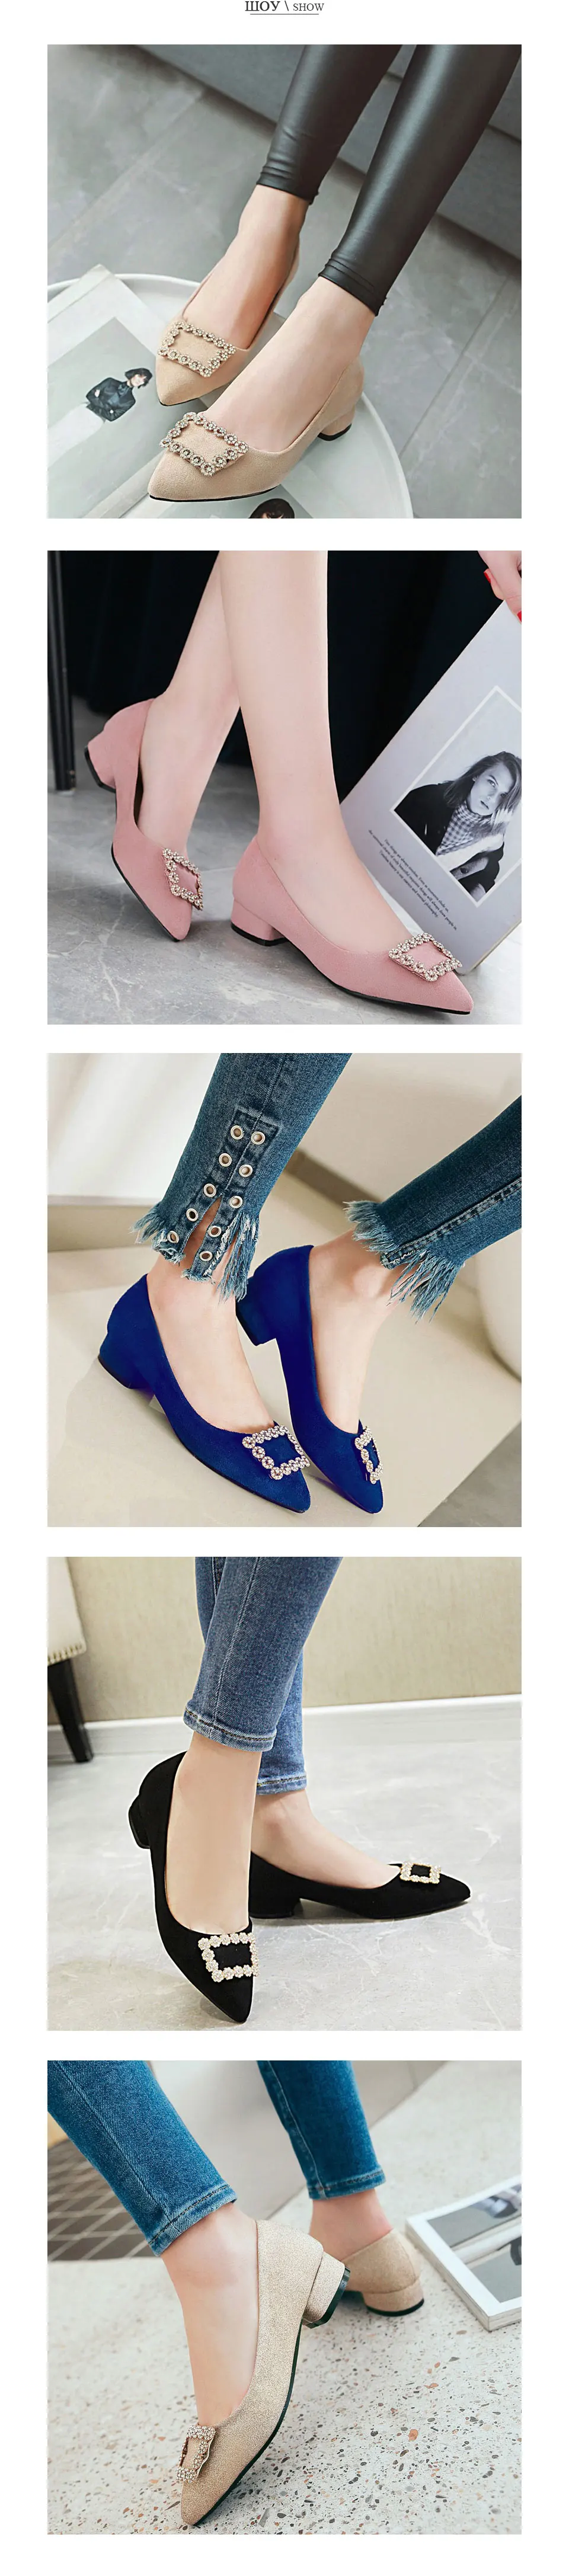 Fanyuan/ г. Новые весенние женские туфли-лодочки на не сужающемся книзу массивном низком каблуке пикантные женские офисные туфли с острым носком, украшенные кристаллами и квадратной пряжкой размеры 34-43